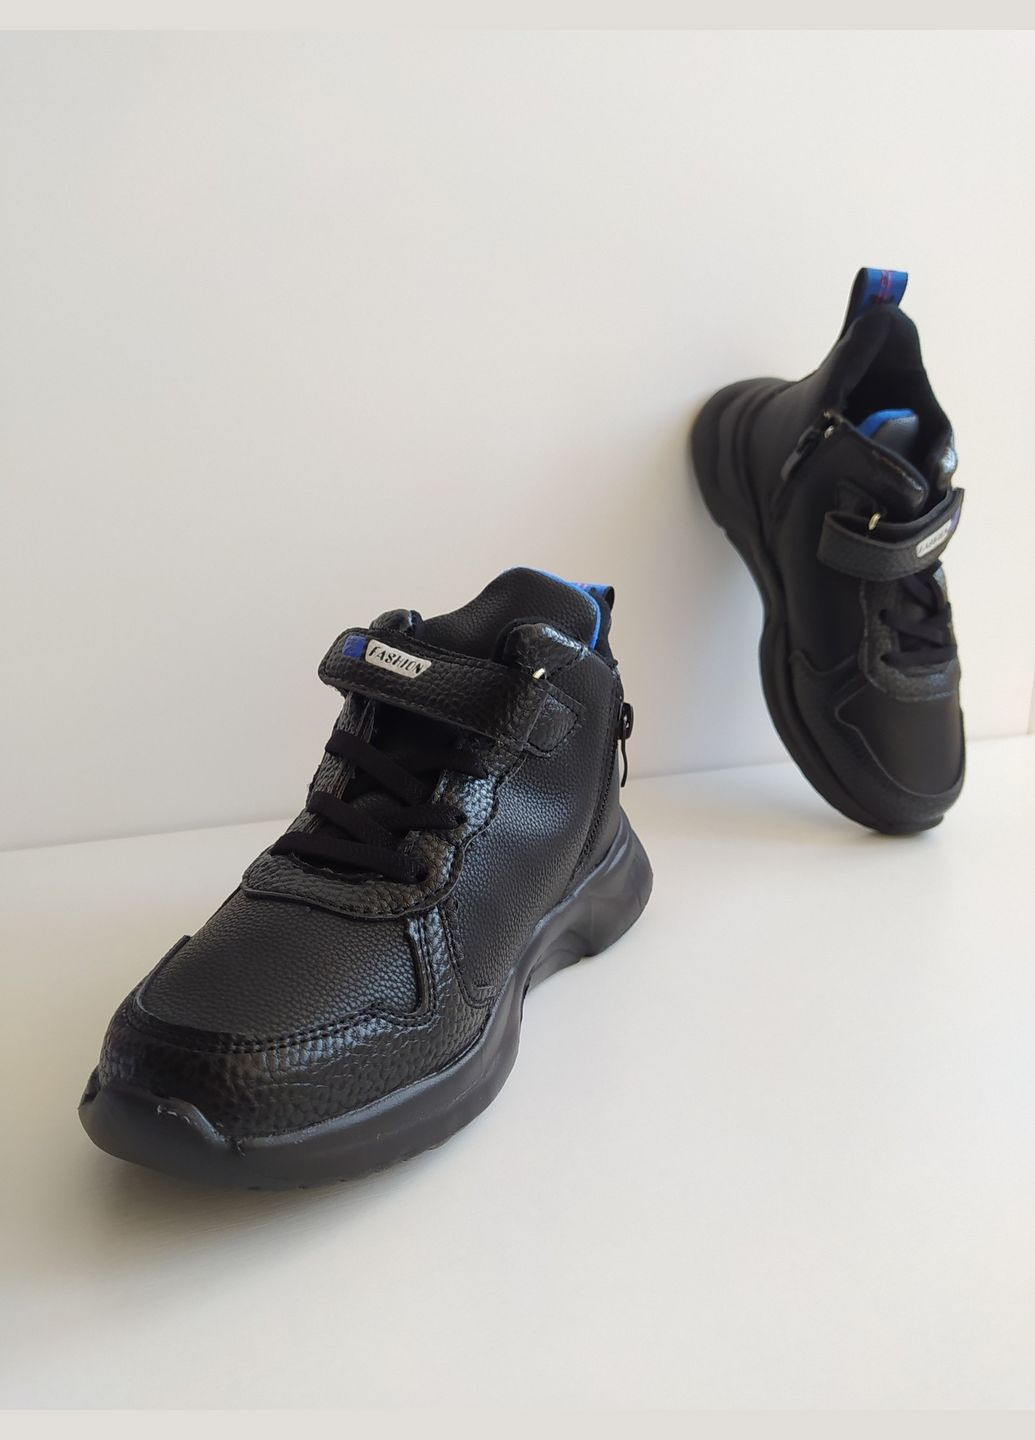 Чорні дитячі кросівки 31 р 19 см чорний артикул к141 W.Niko